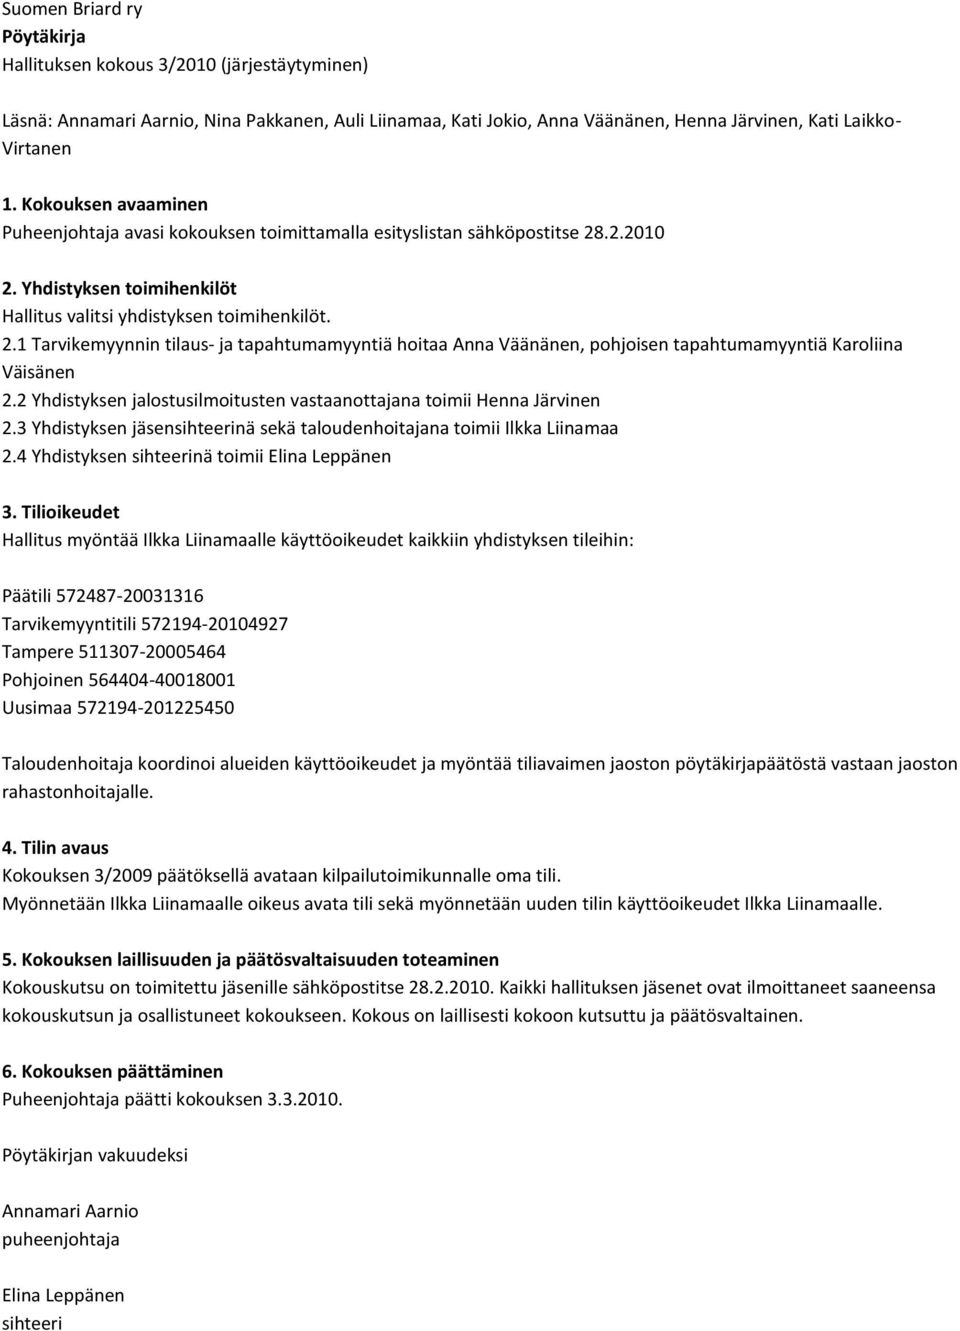 .2.2010 2. Yhdistyksen toimihenkilöt Hallitus valitsi yhdistyksen toimihenkilöt. 2.1 Tarvikemyynnin tilaus- ja tapahtumamyyntiä hoitaa Anna Väänänen, pohjoisen tapahtumamyyntiä Karoliina Väisänen 2.